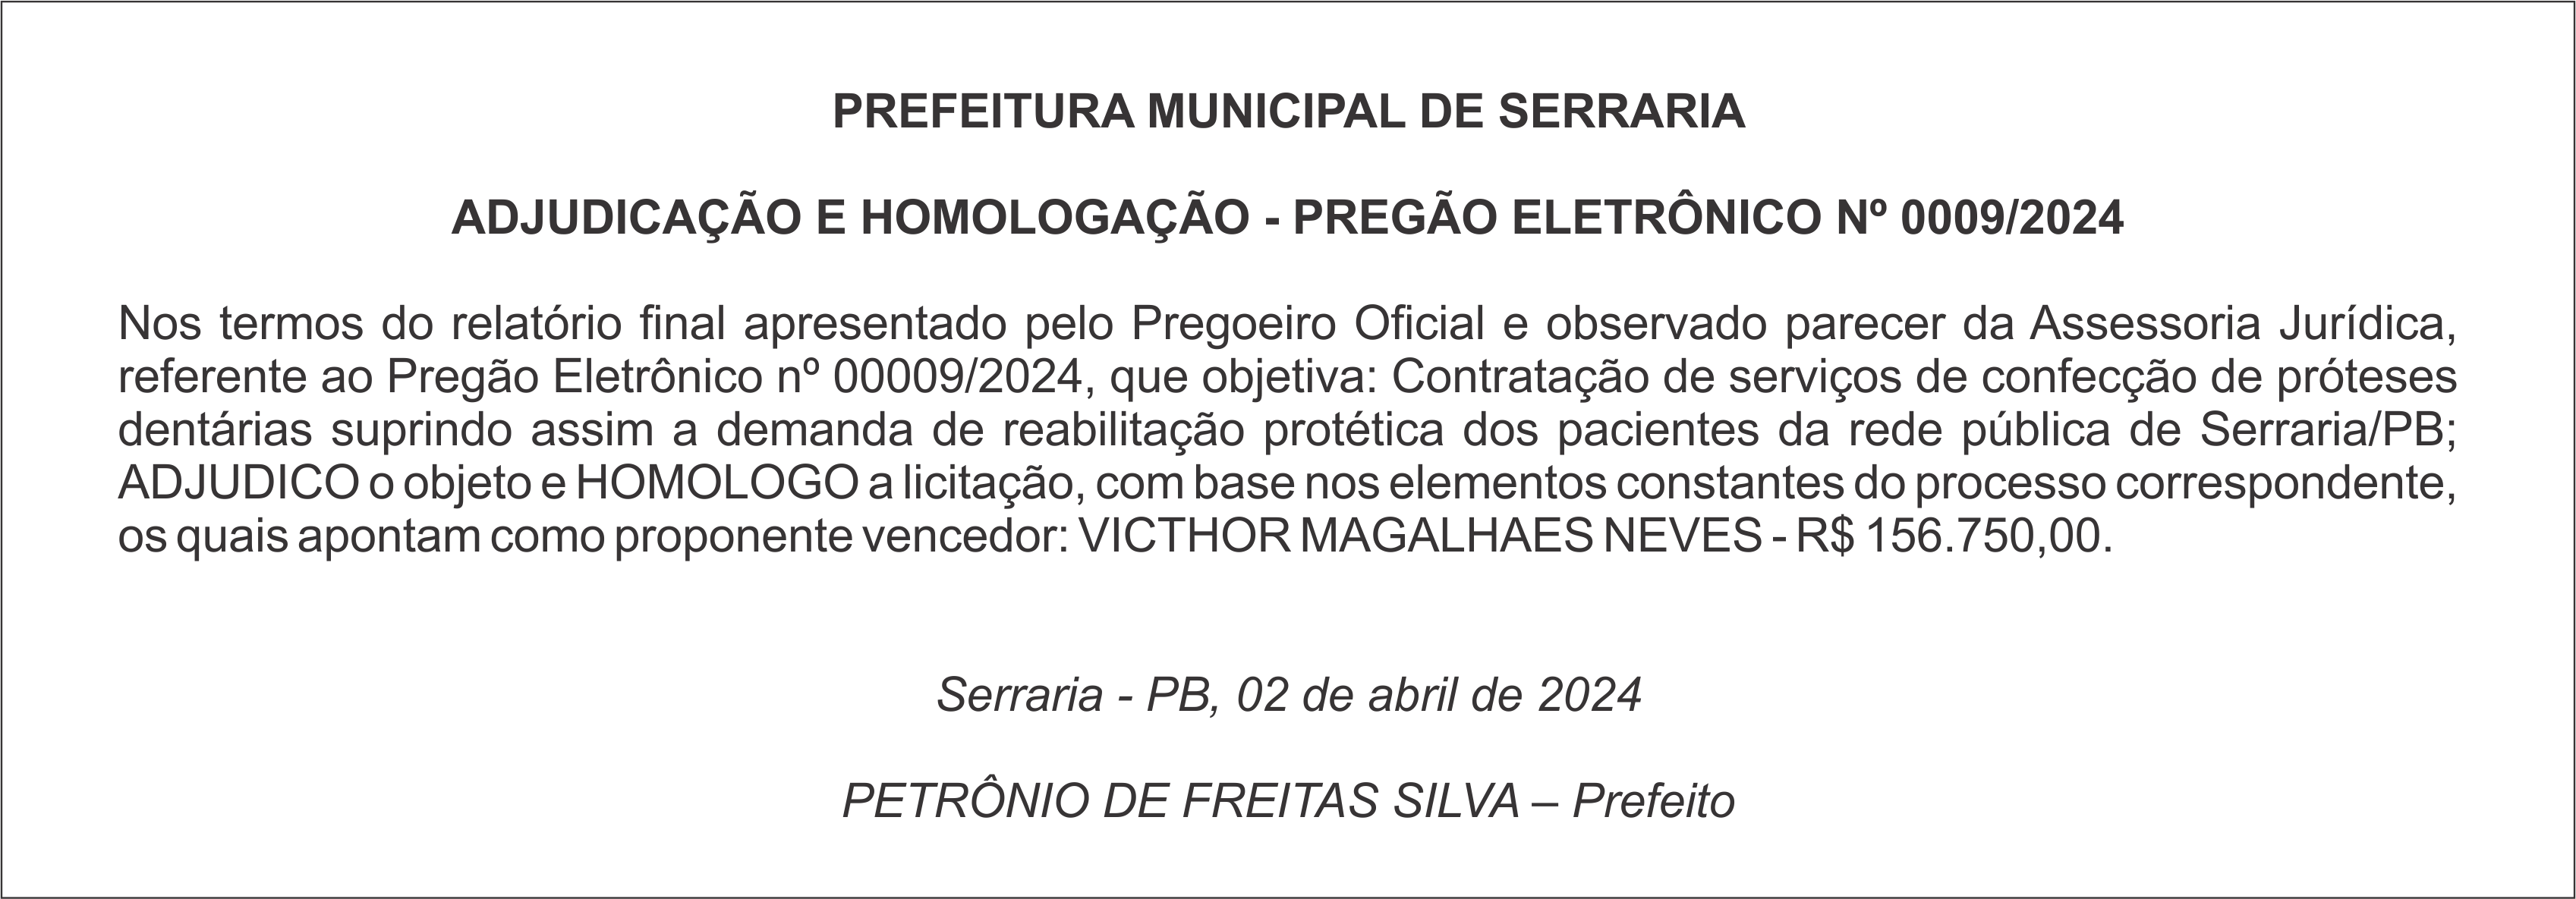 PREFEITURA MUNICIPAL DE SERRARIA  – ADJUDICAÇÃO E HOMOLOGAÇÃO – PREGÃO ELETRÔNICO Nº 0009/2024